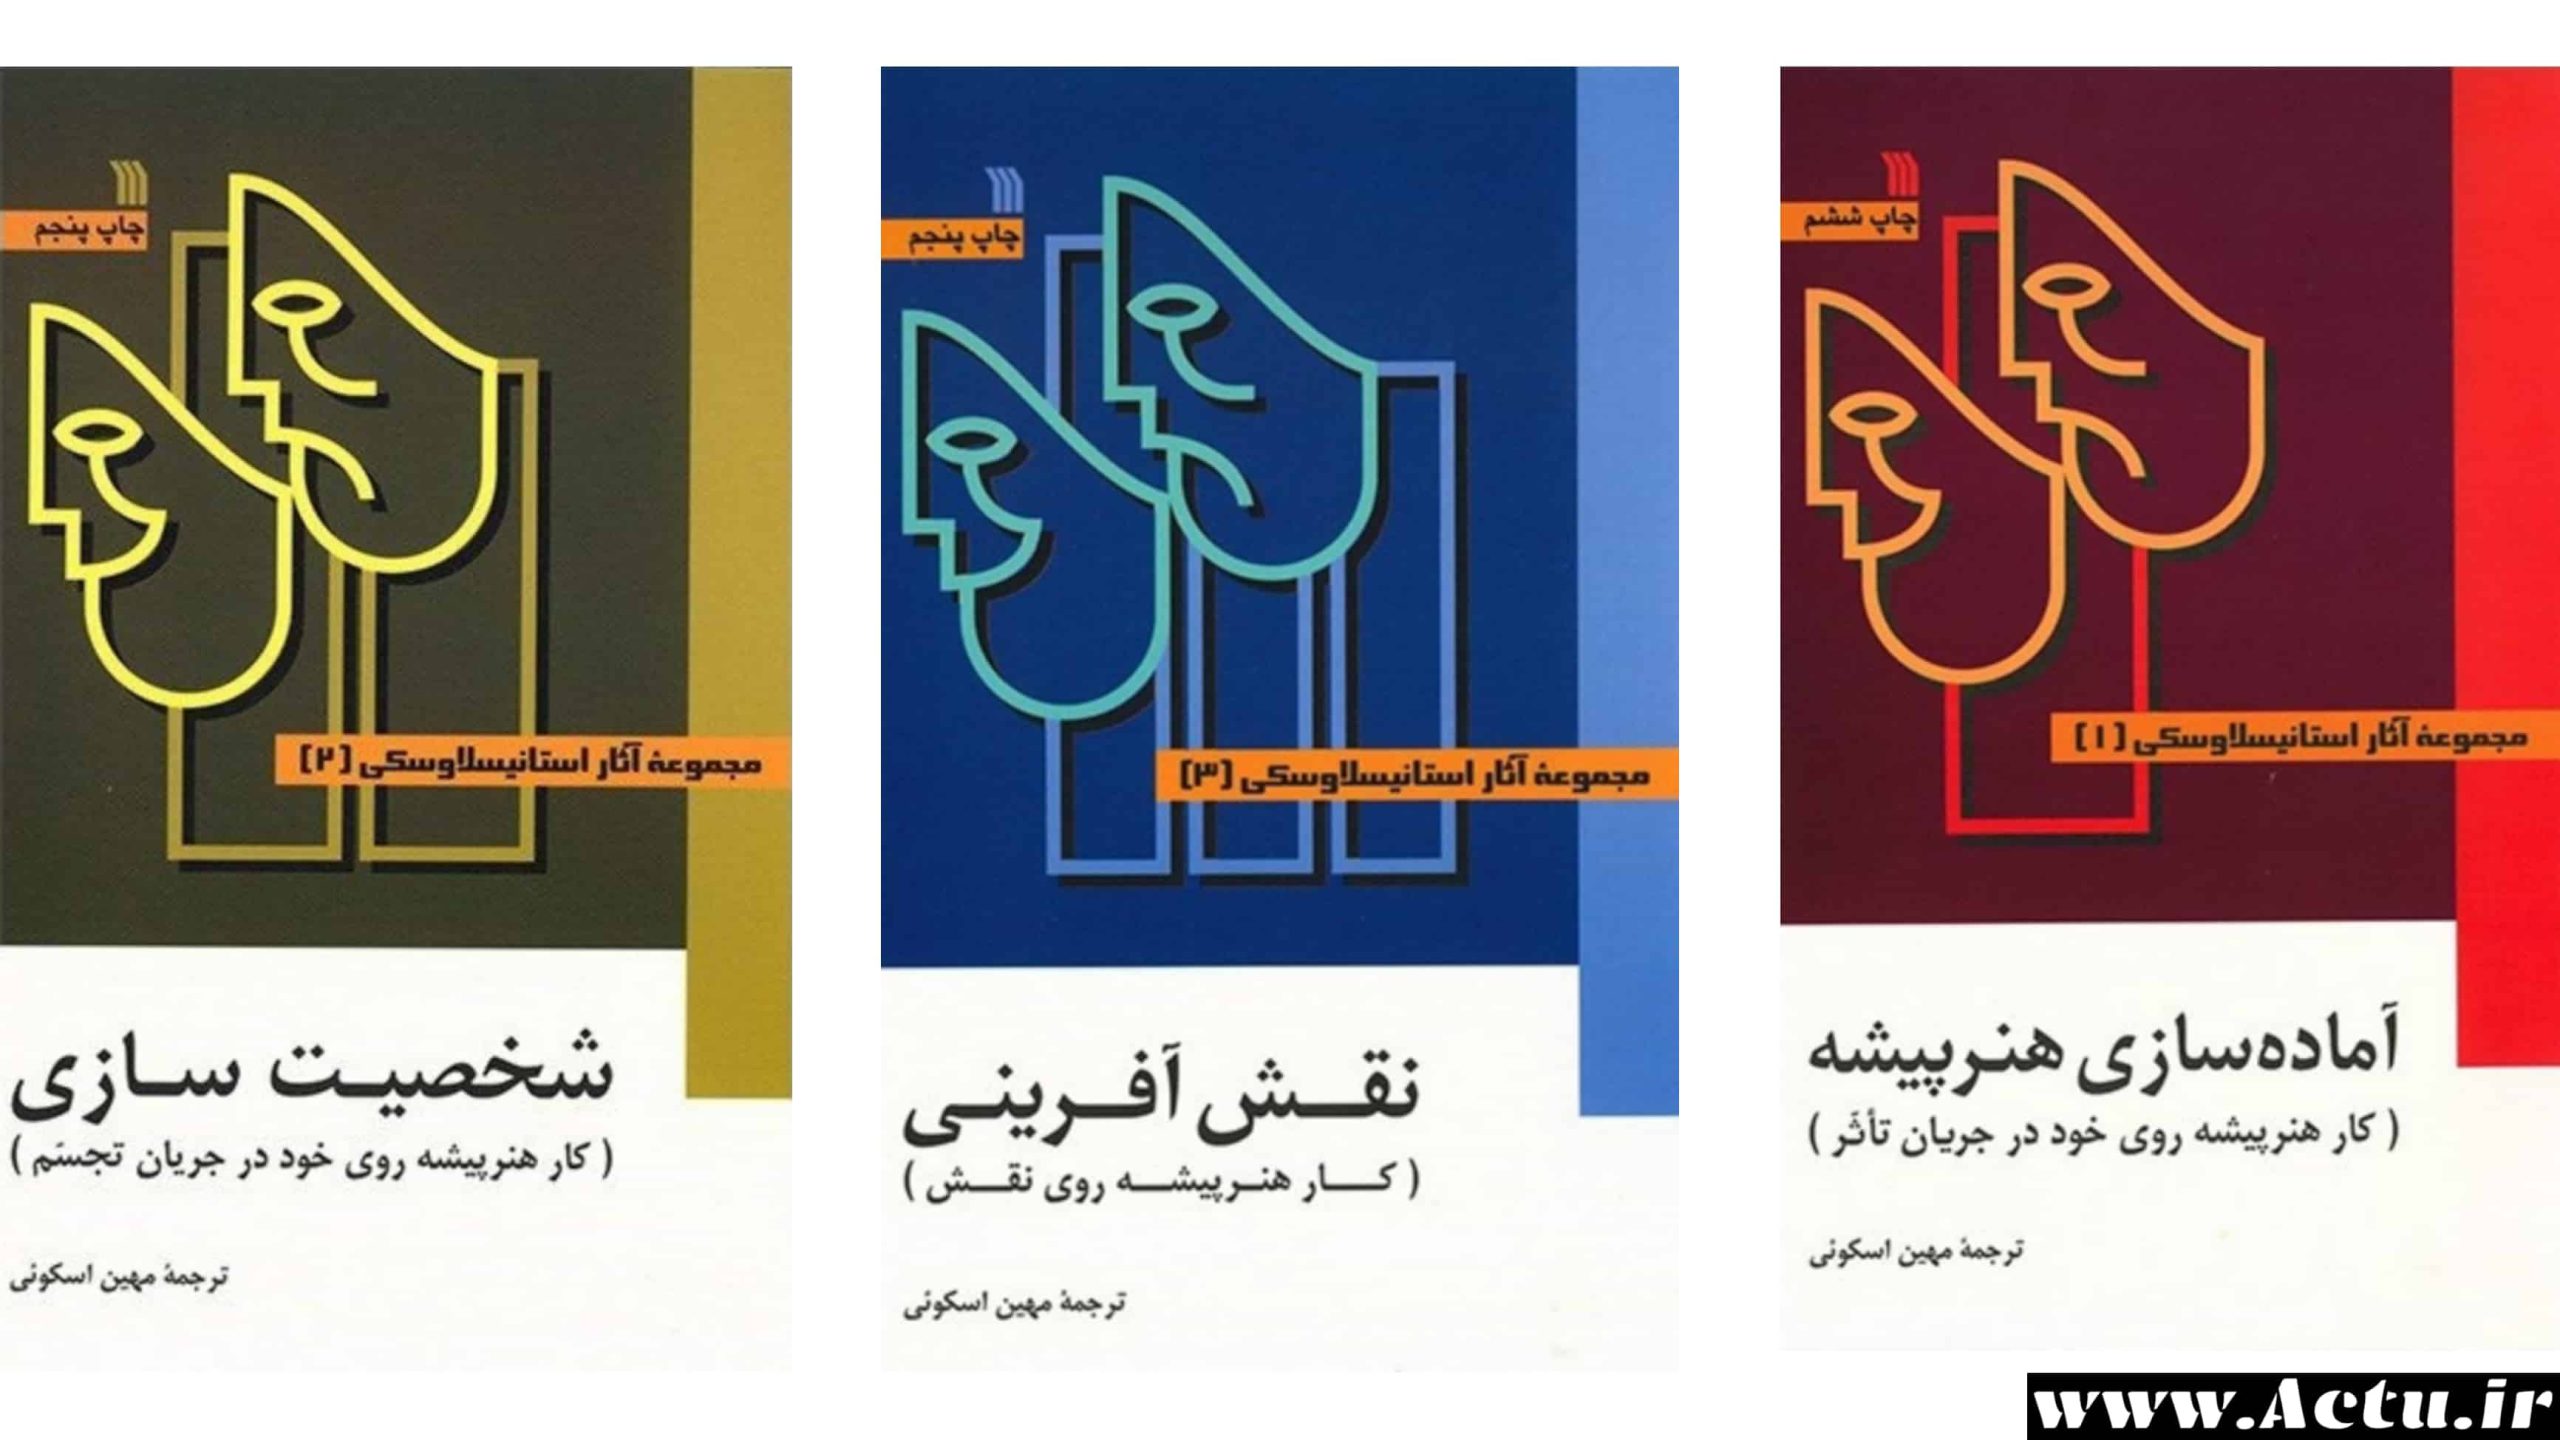 سه جلد کتاب استانیسلاوسکی